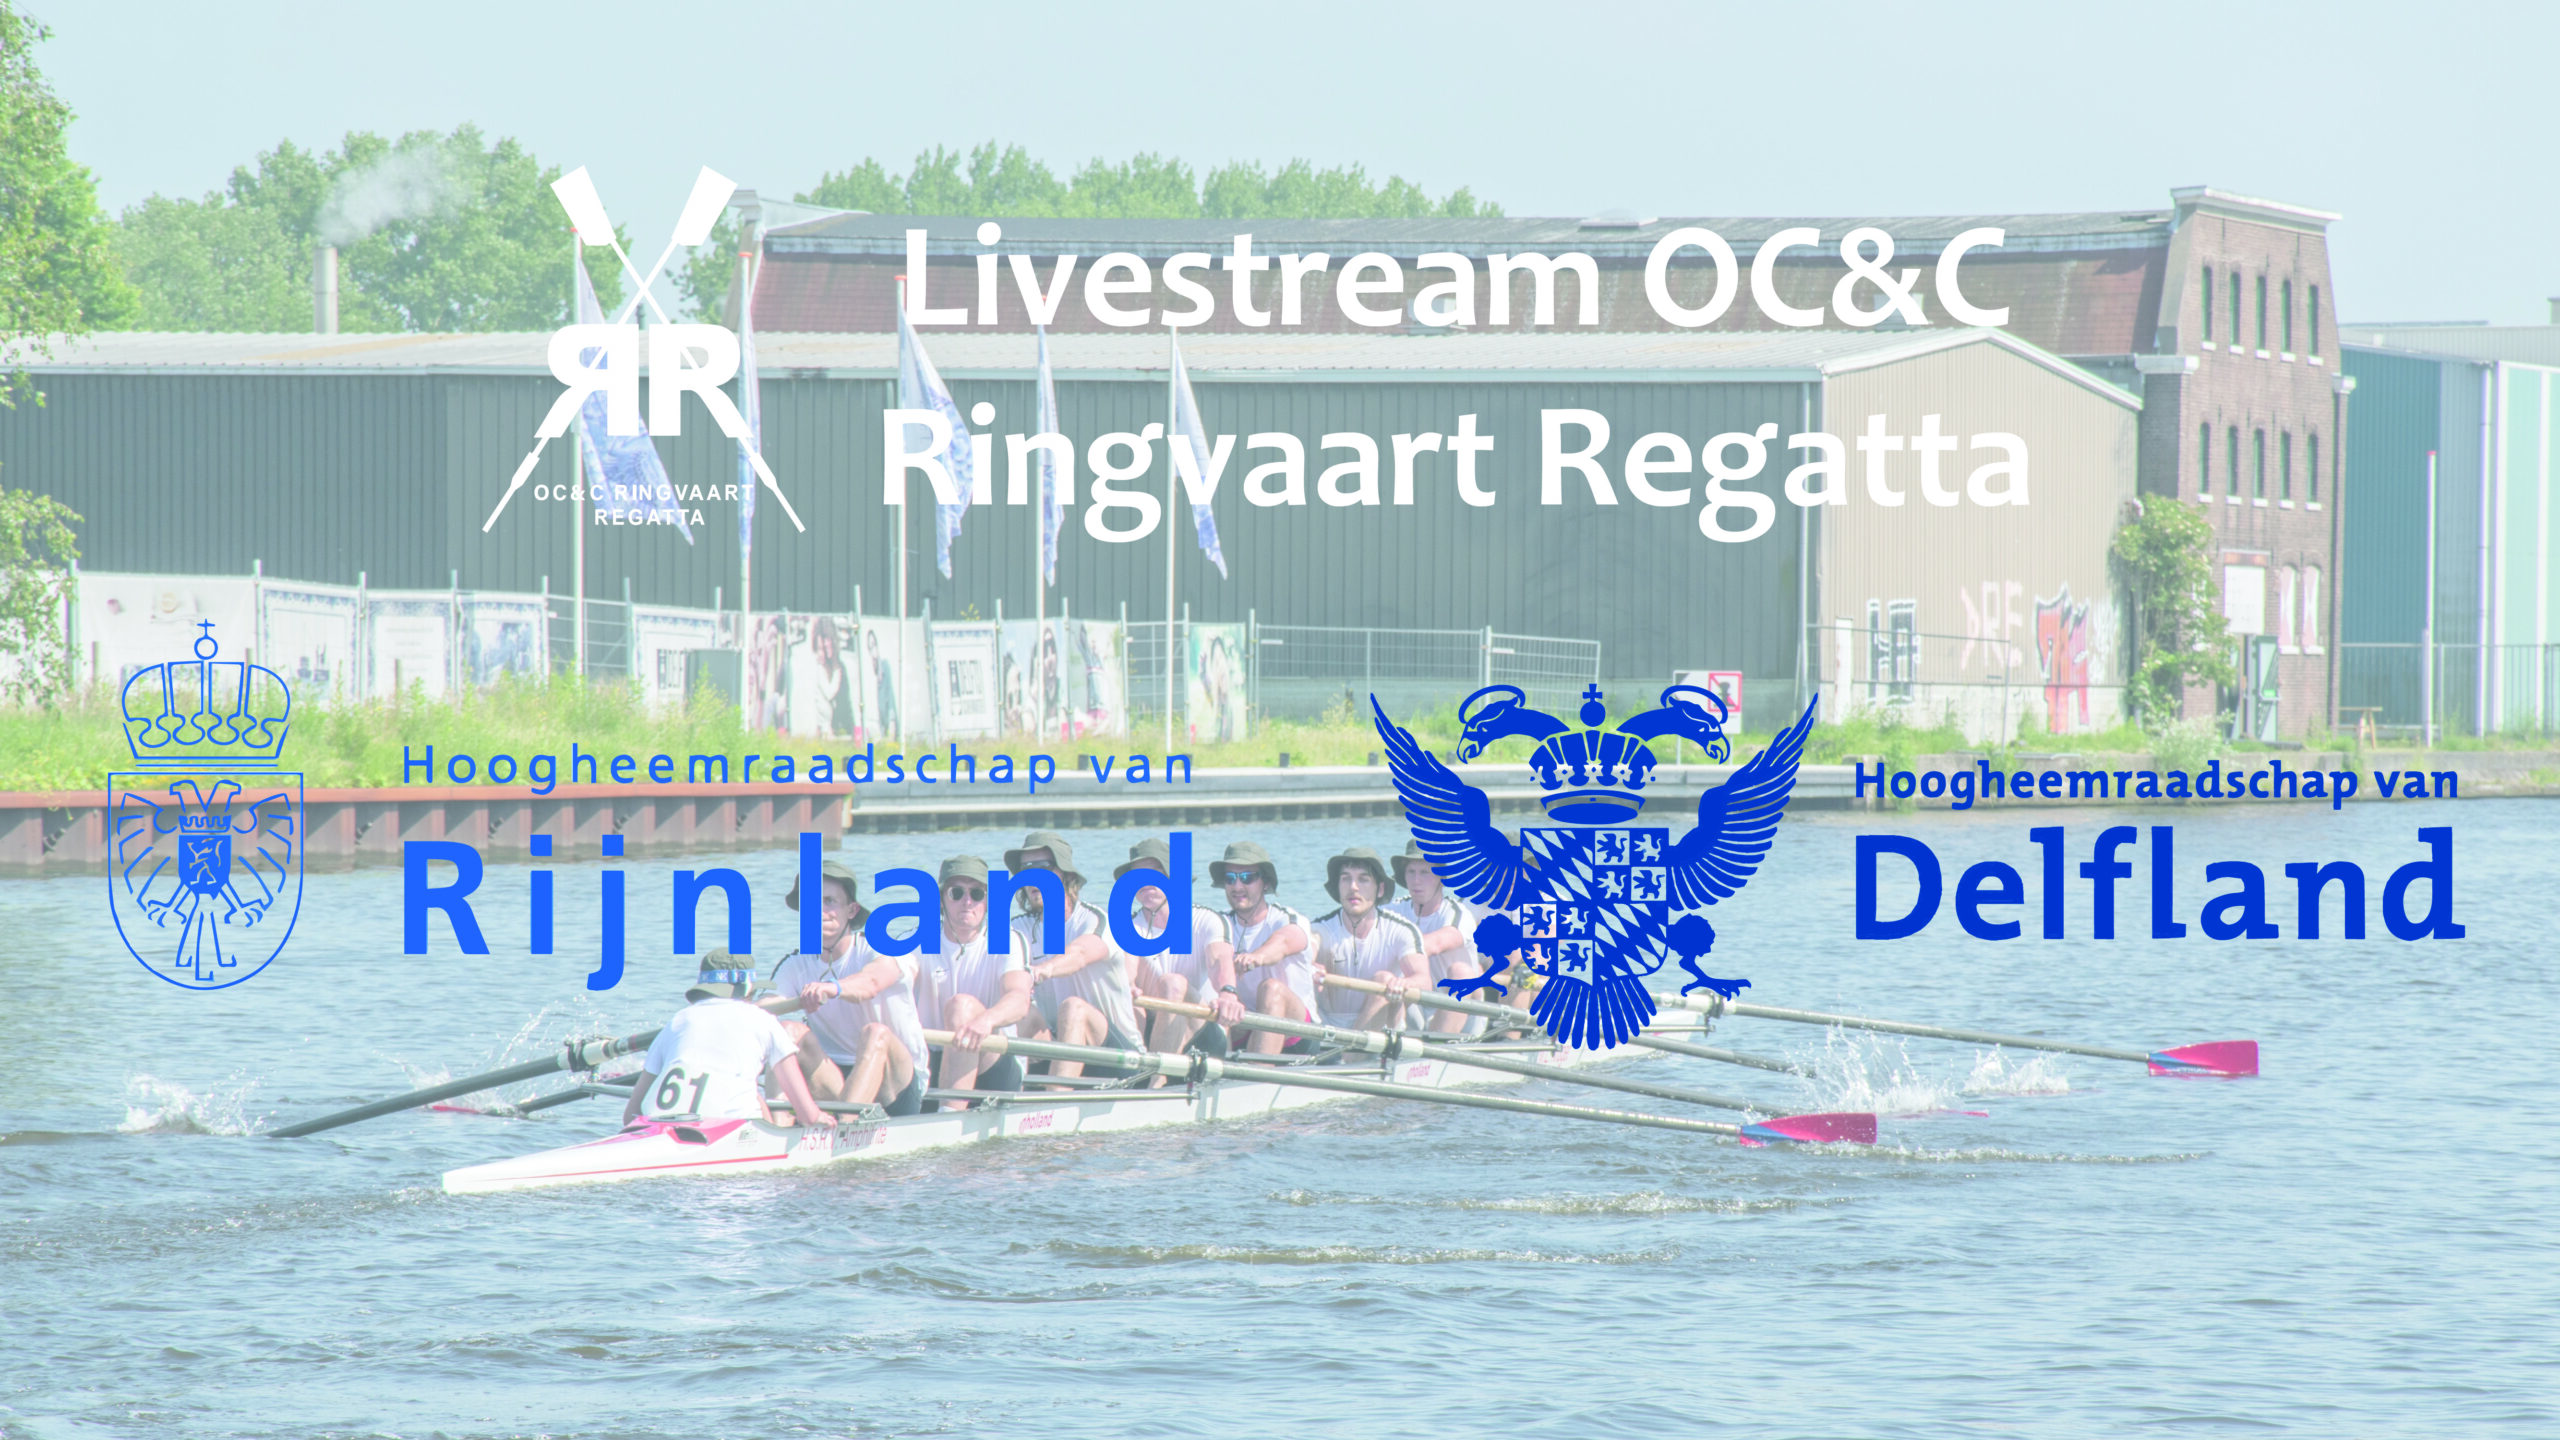 Je bekijkt nu Livestream OC&C Ringvaart Regatta